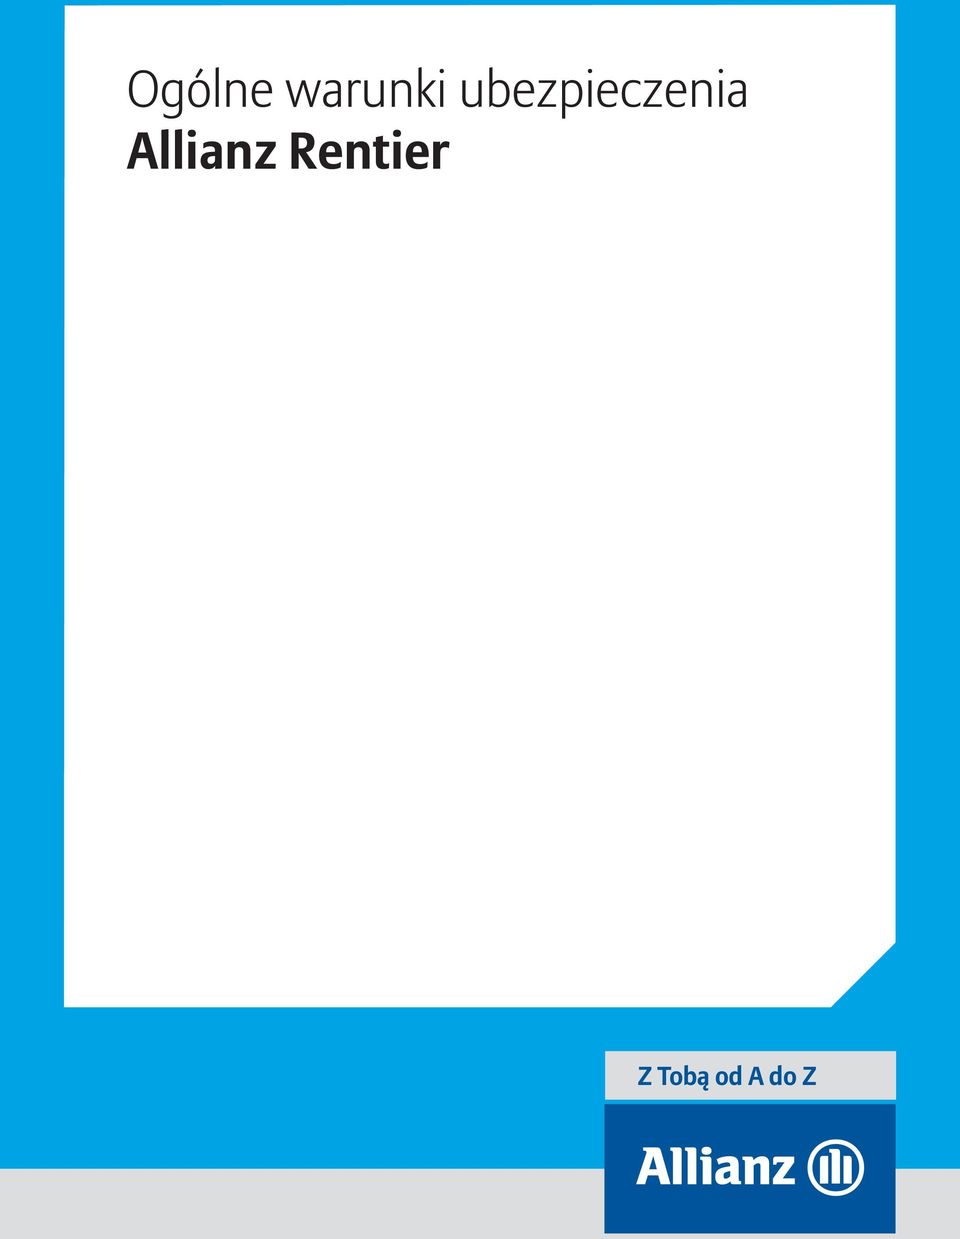 Allianz Rentier